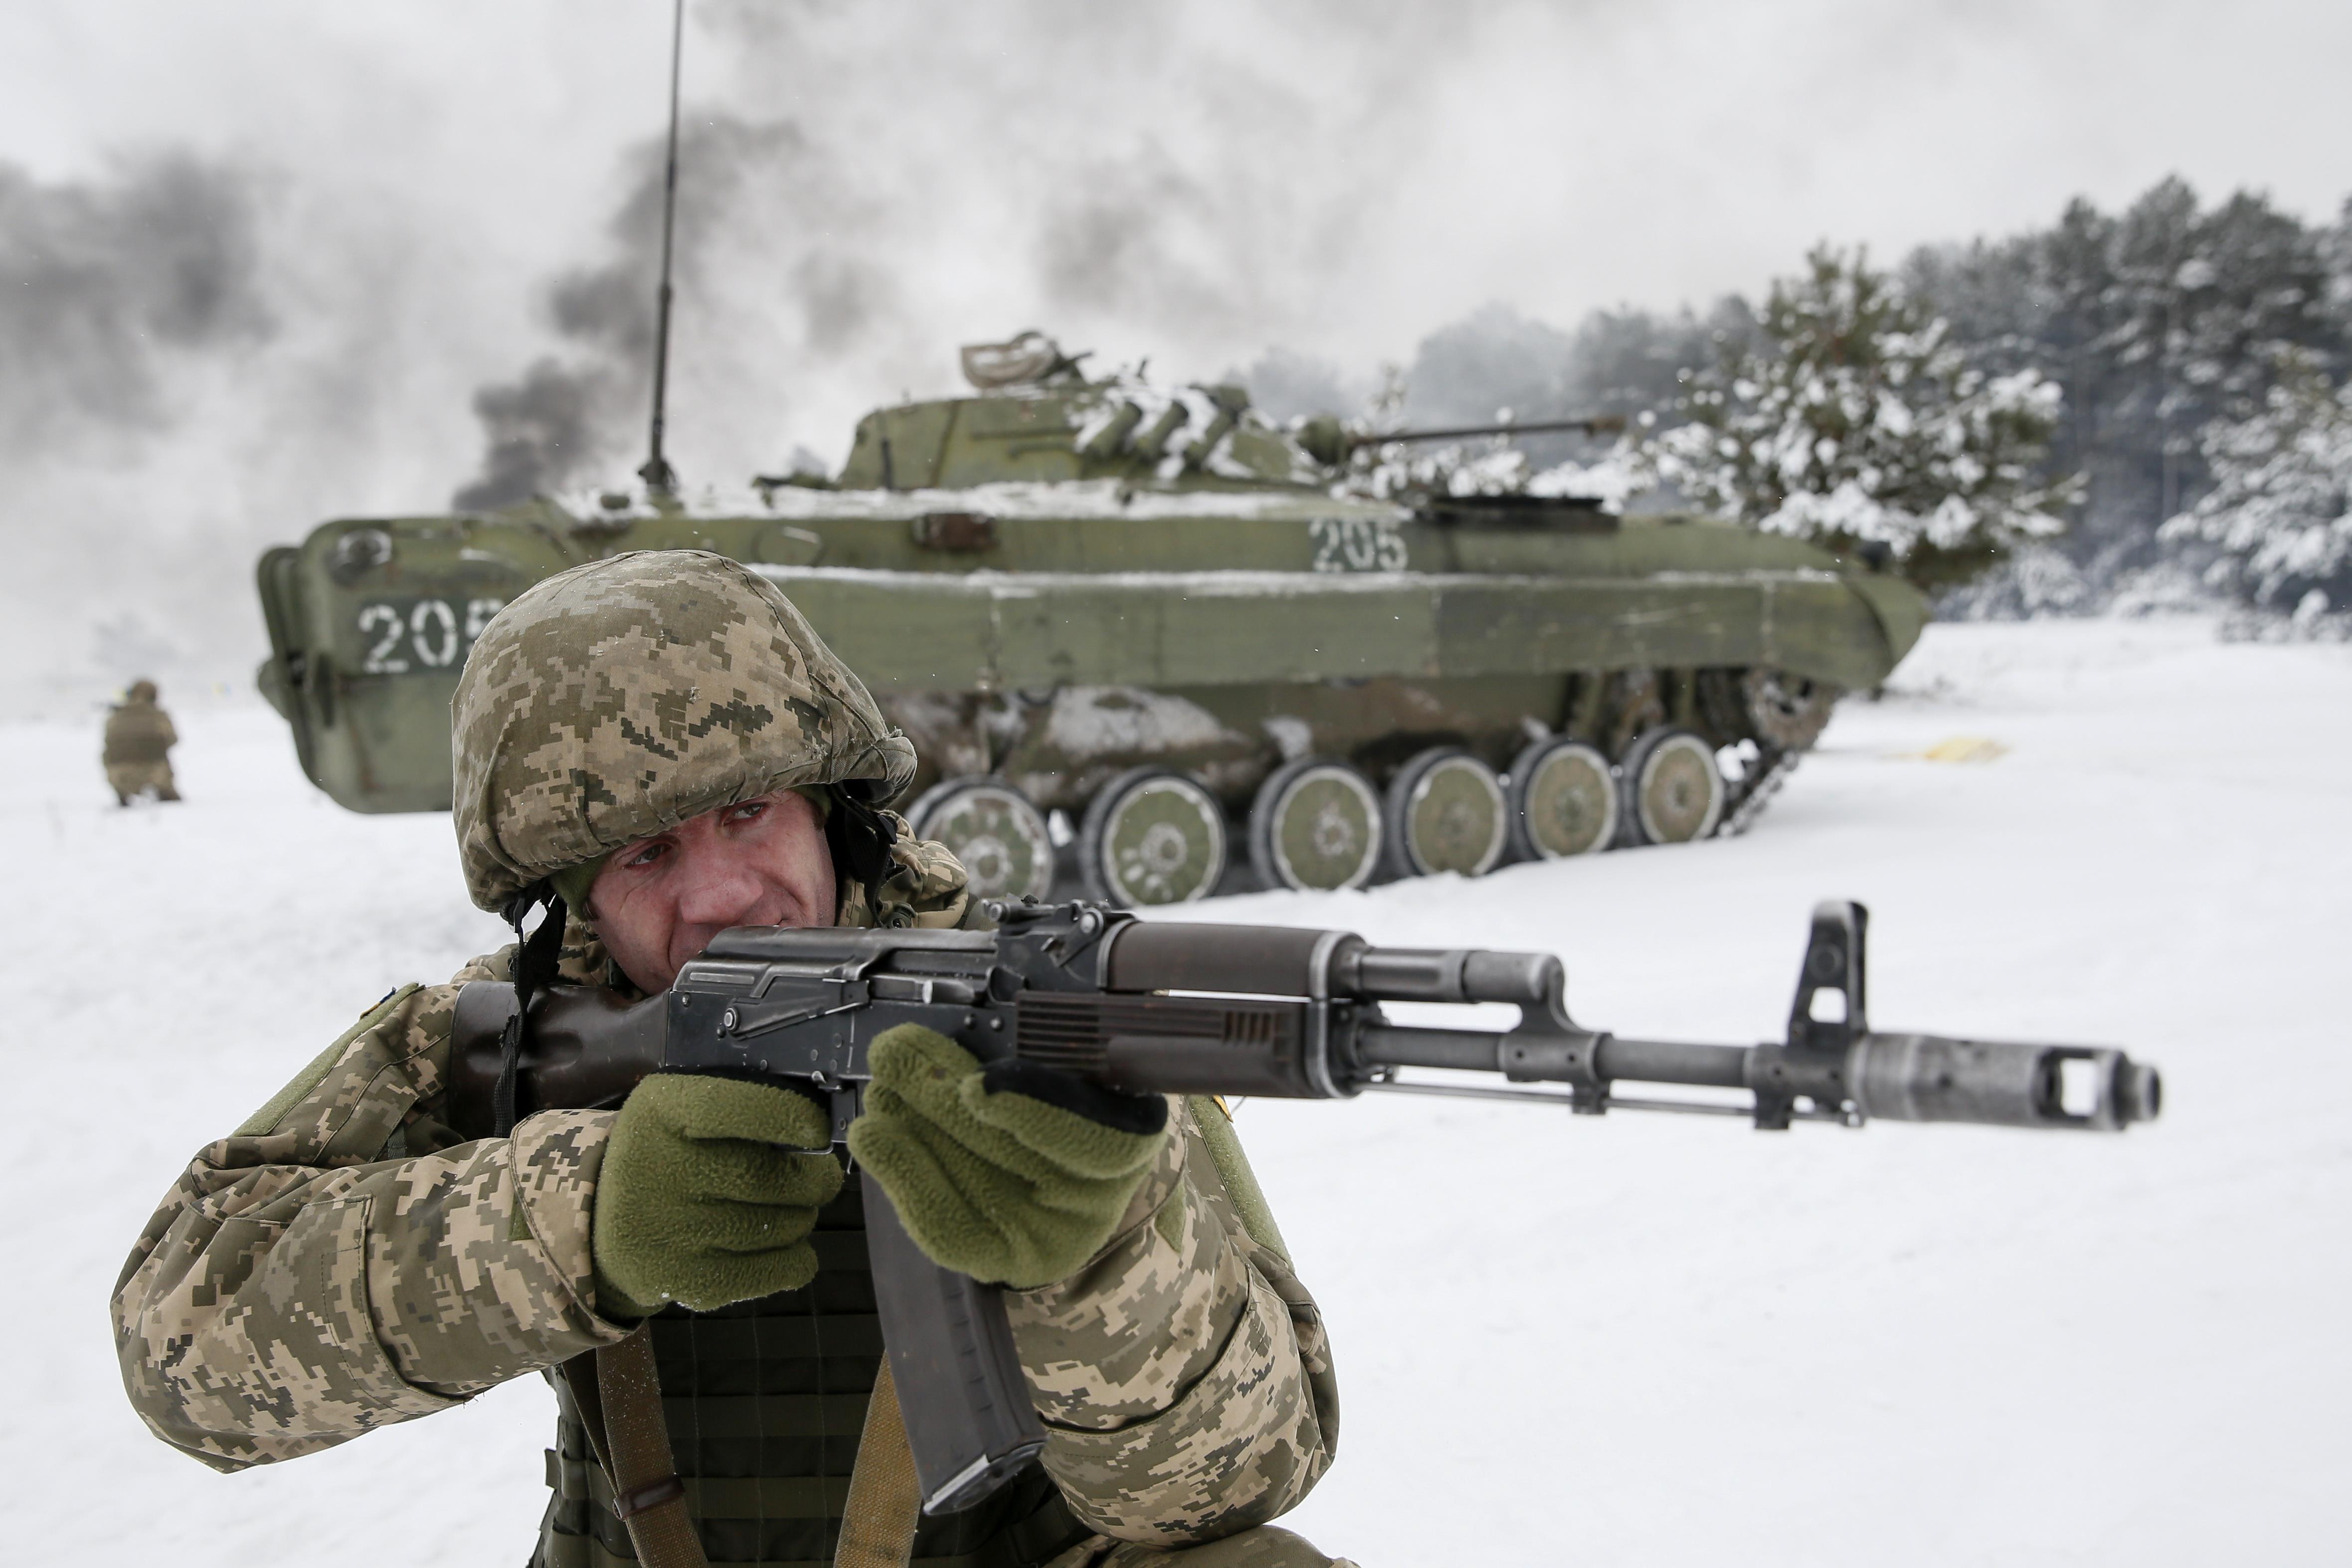 Un reservista del Ejército Ucraniano participa en ejercicios militares en el centro de entrenamiento del Ejército Ucraniano "Desna" en la región de Chernihiv, Ucrania (REUTERS/Valentyn Ogirenko)